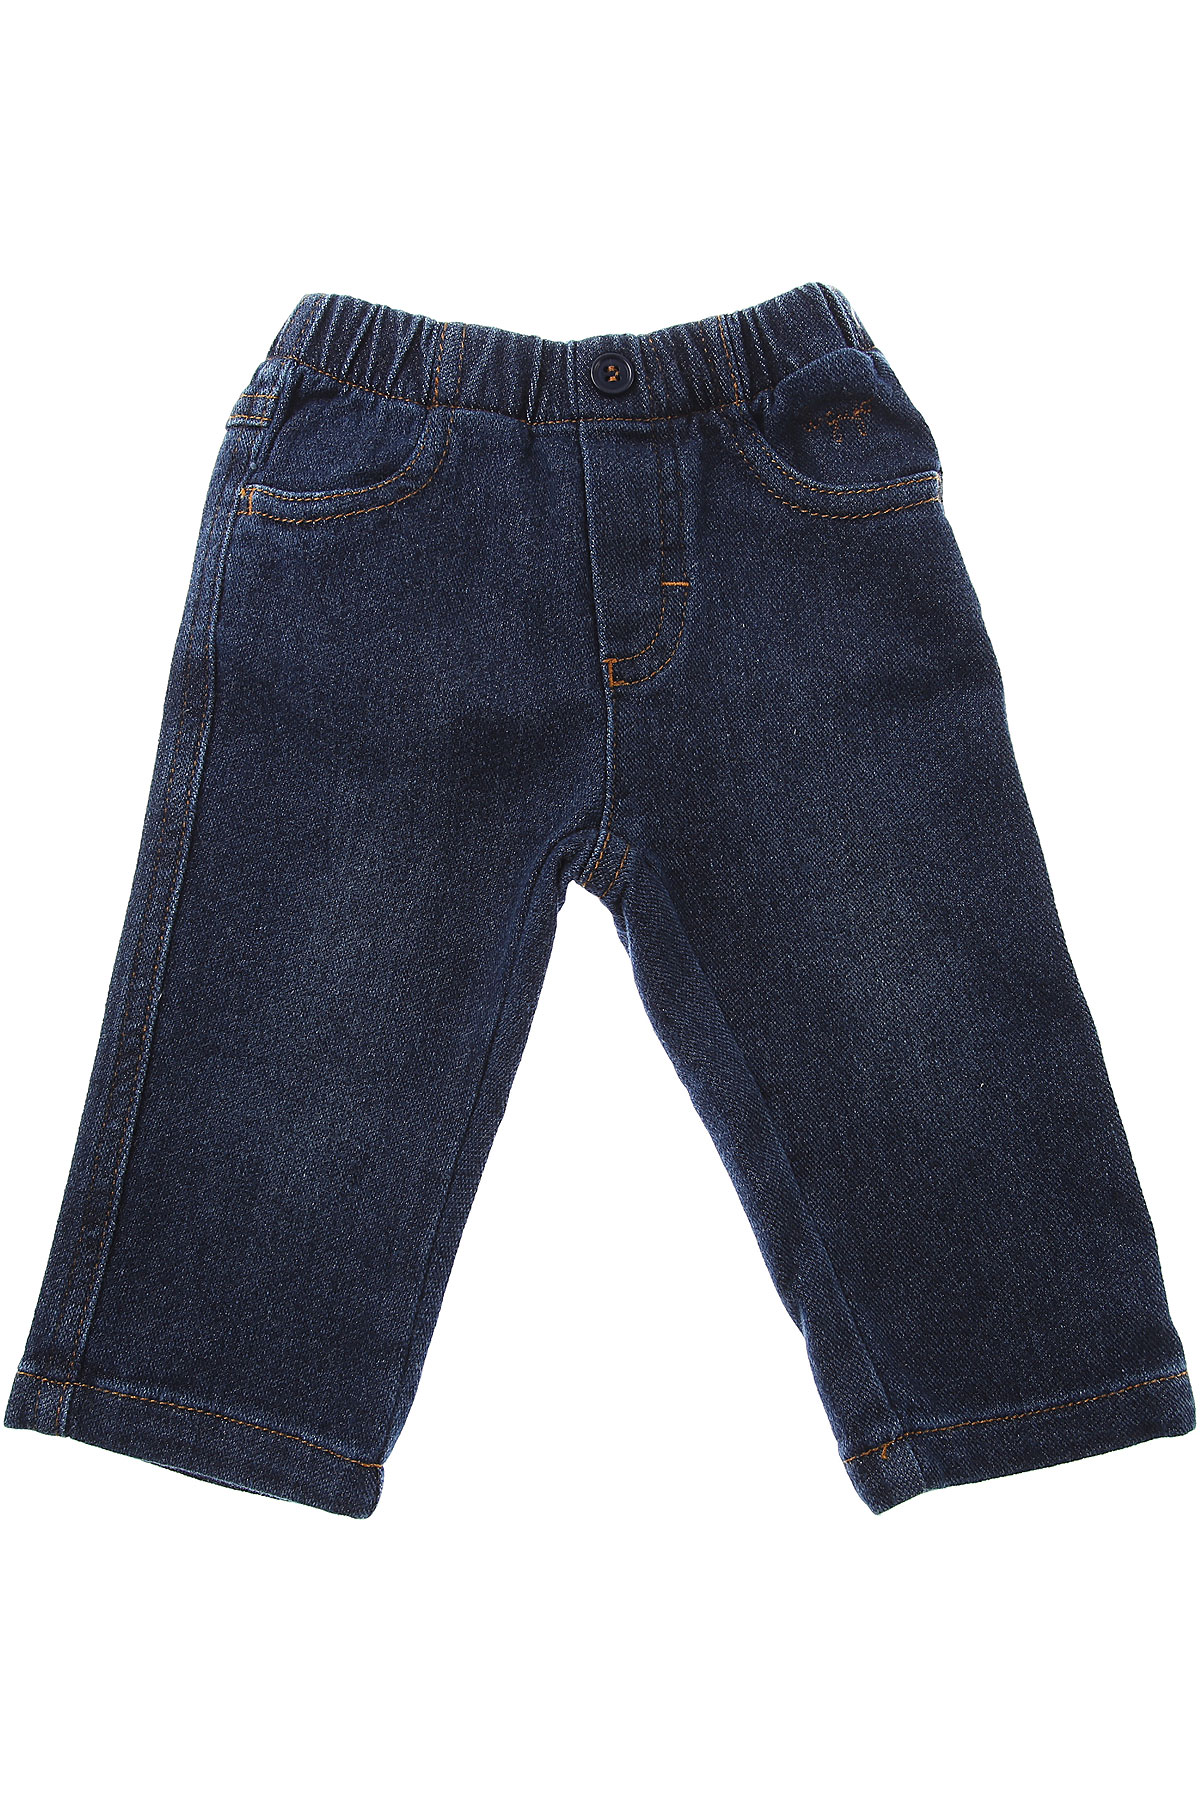 Il Gufo Baby Jeans für Jungen Günstig im Sale, Denim Blau, Baumwolle, 2017, 18 M 6M 9 M